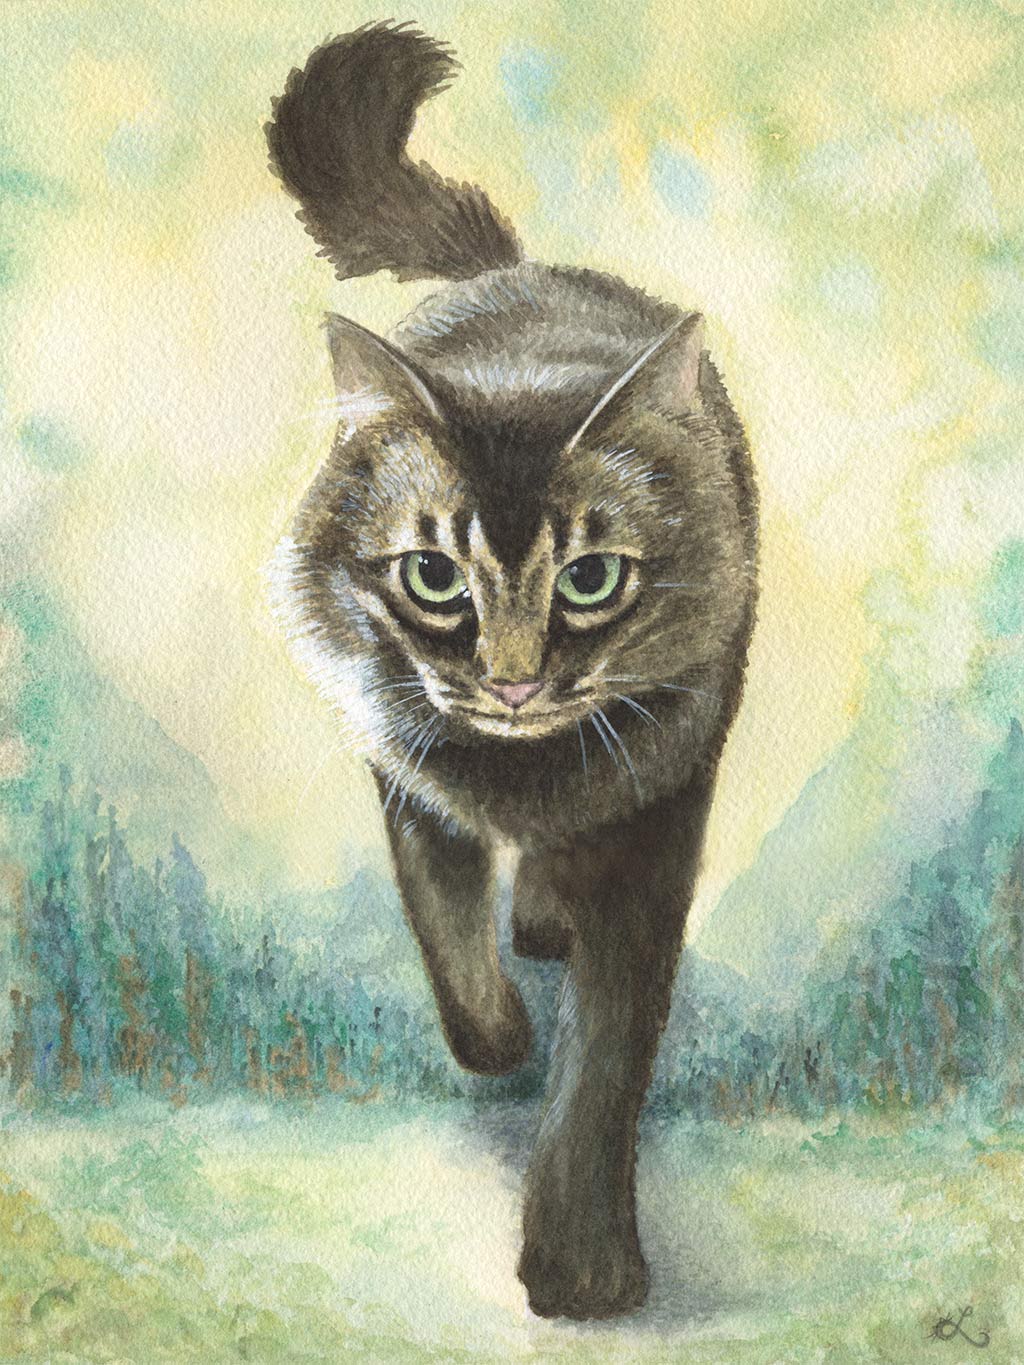 custom_watercolor-painting-of-cats-custom-cat-art-pet-portrait-art-personalized-pet-art-cat-watercolor-lolo-ology-custom-art-cat-painting_2048x.jpg